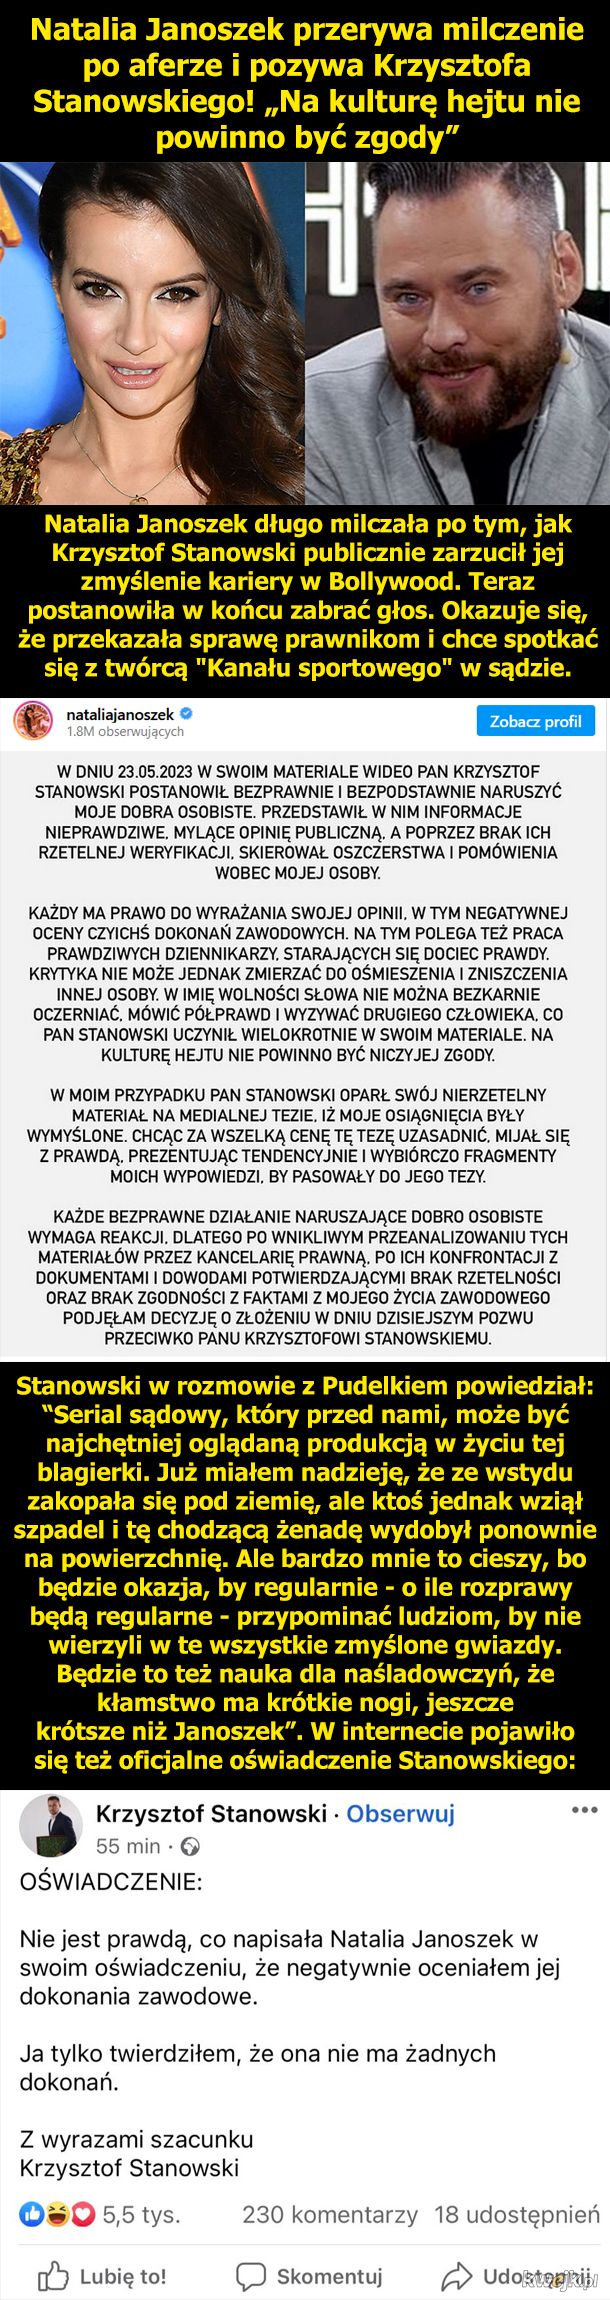 Natalia Janoszek pozywa Krzysztofa Stanowskiego